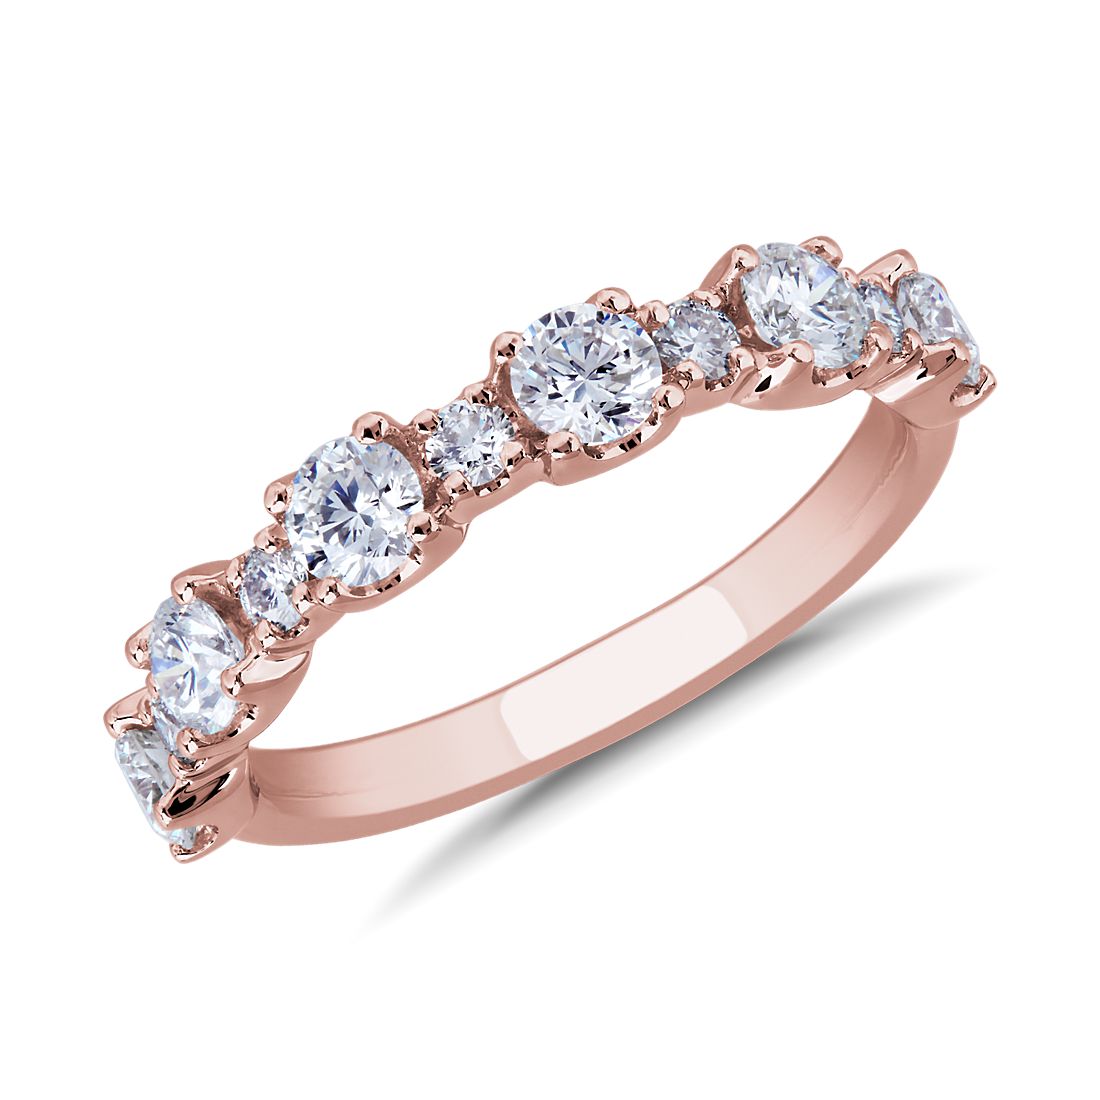 Capri Diamond Ring in 14k Rose Gold (1 ct. tw.)